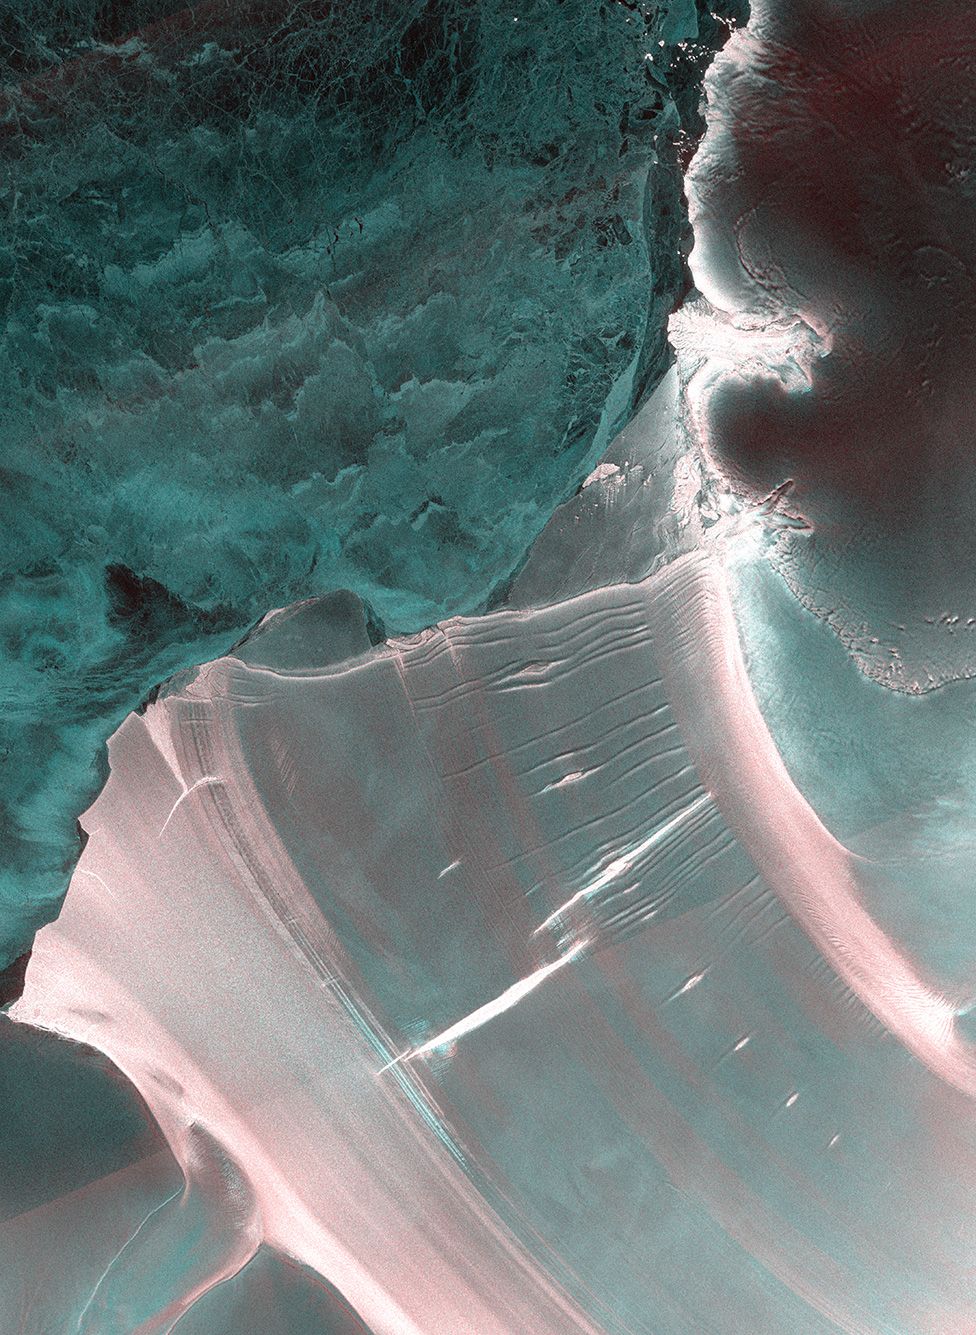 Композитное изображение Sentinel-1, показывающее изрытое трещинами быстротечное окончание шельфового ледника Филчера, Антарктида,